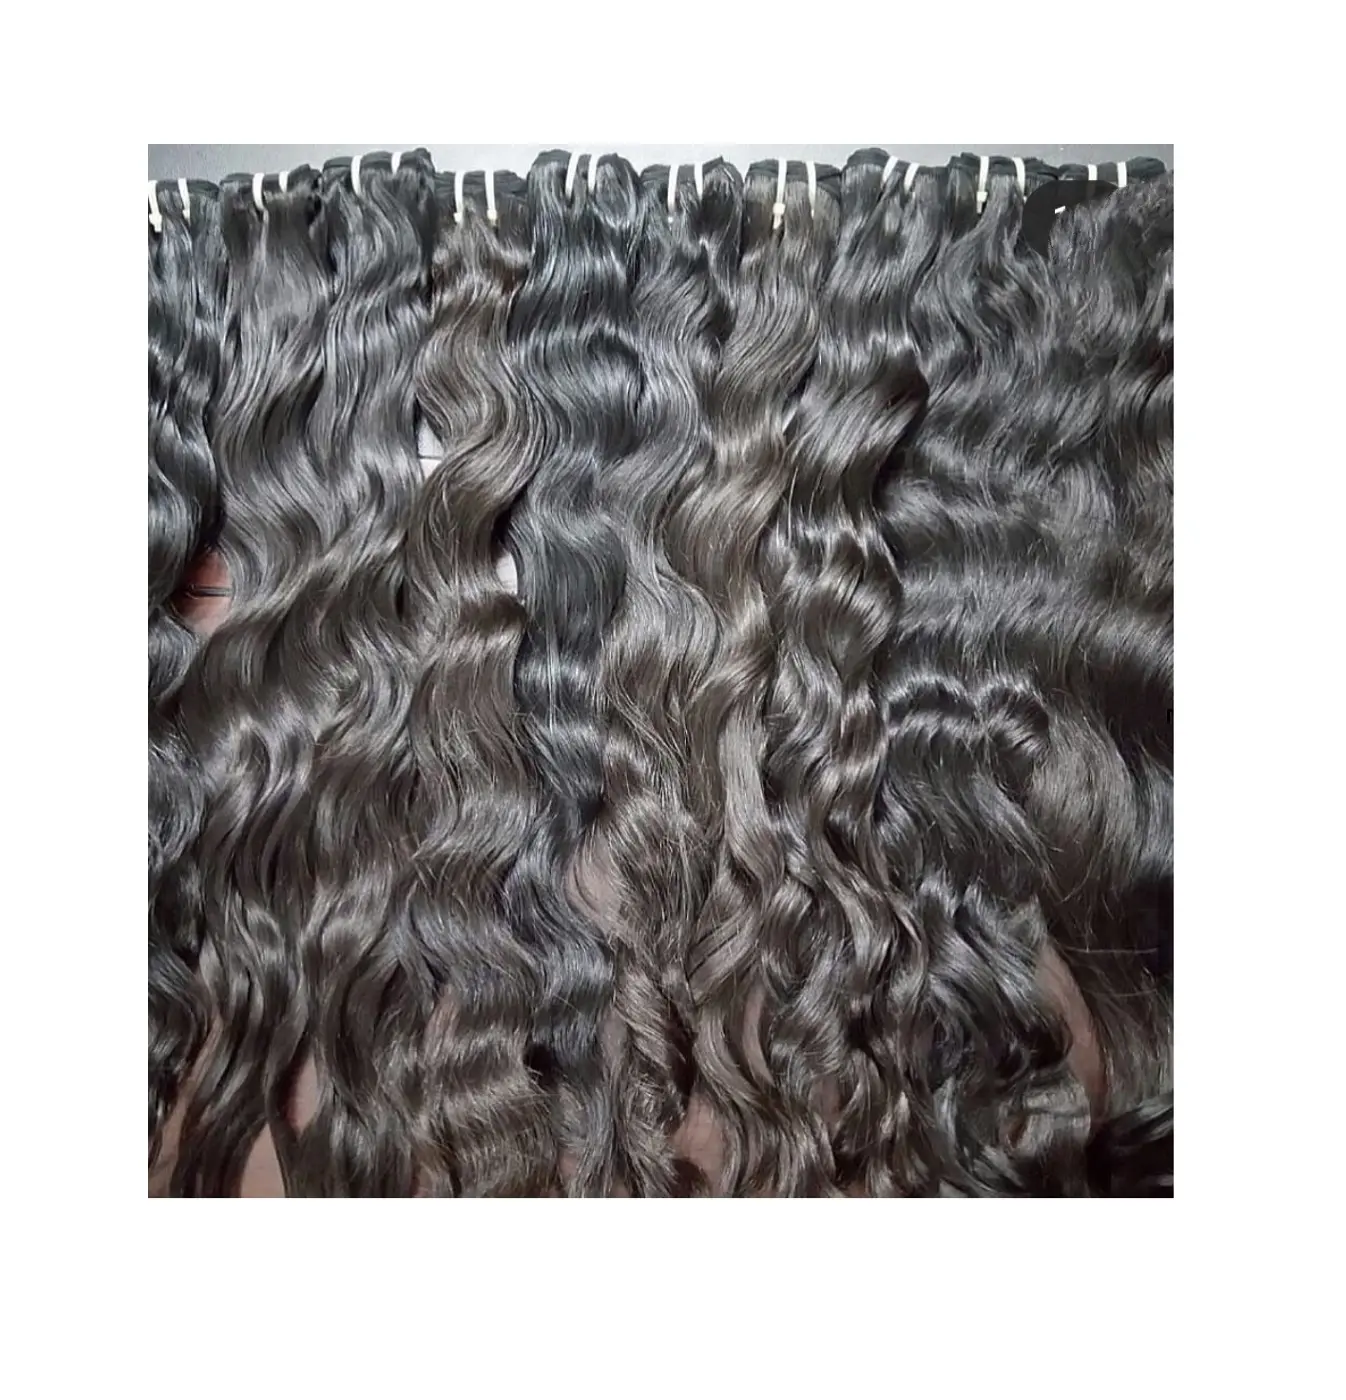 Сырые индийские волосы из южноиндийских храмов по лучшей цене, доставка через DHL и Fedex